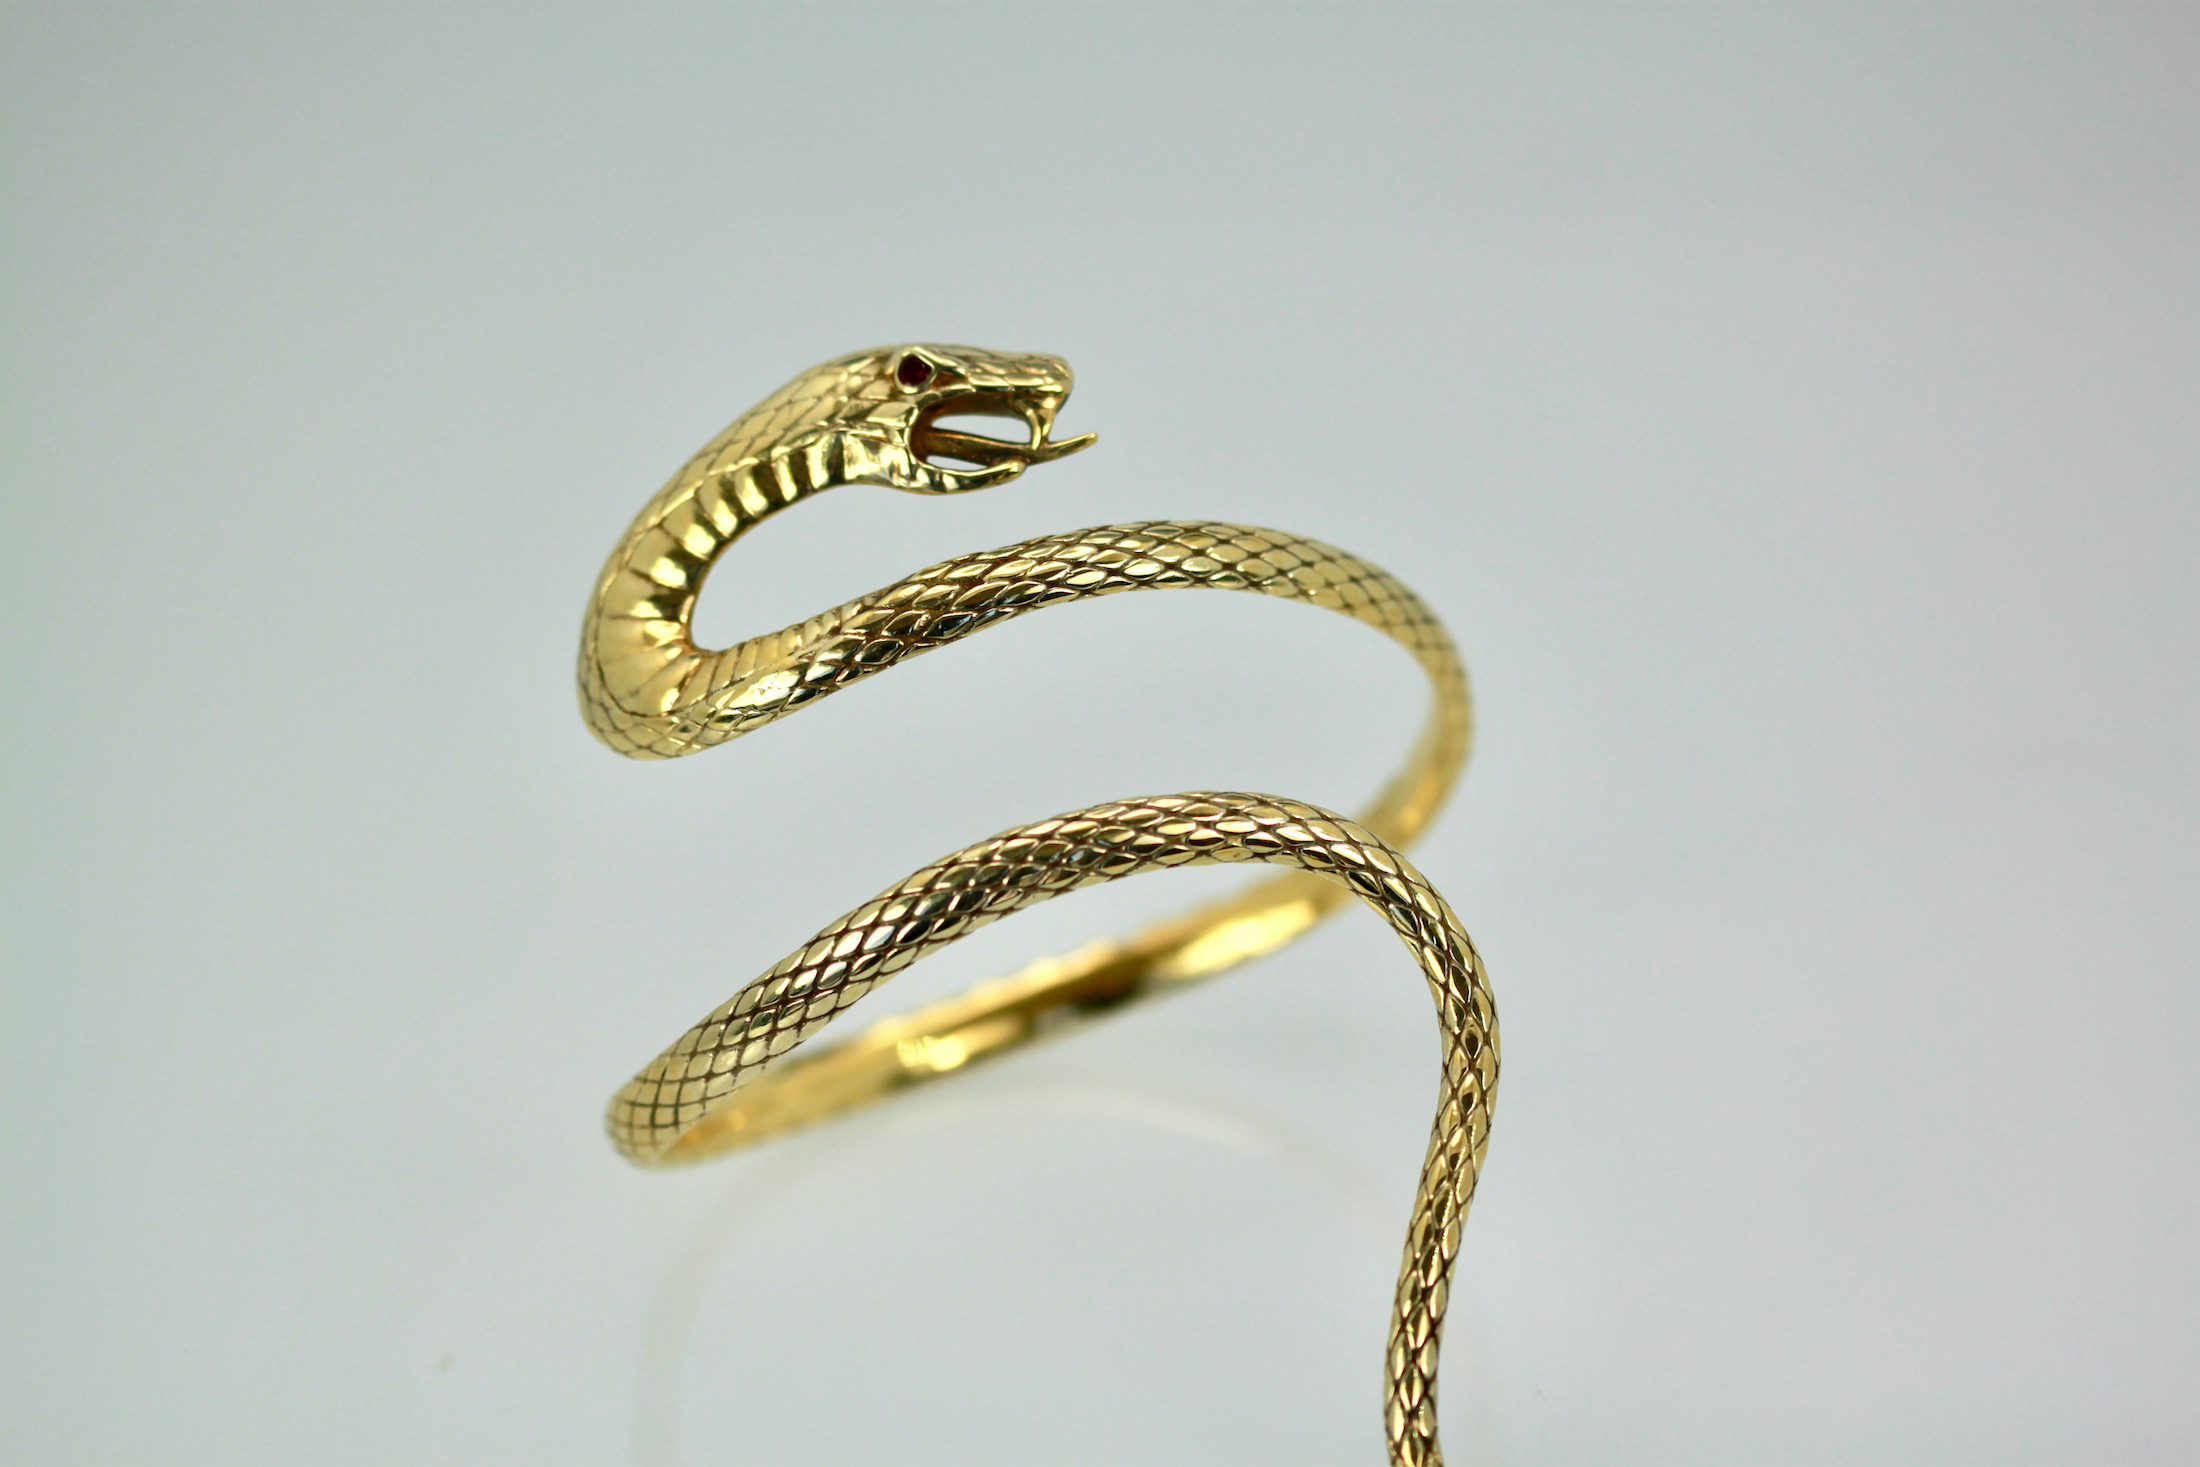 Amazon.com: LAKIYOYO Bendable Snake Bracelet for Women Adjustable Punk Snake  Choker - Flexible Multi-Purpose Medusa Necklace Hollween Jewelry (4 set gold):  Clothing, Shoes & Jewelry